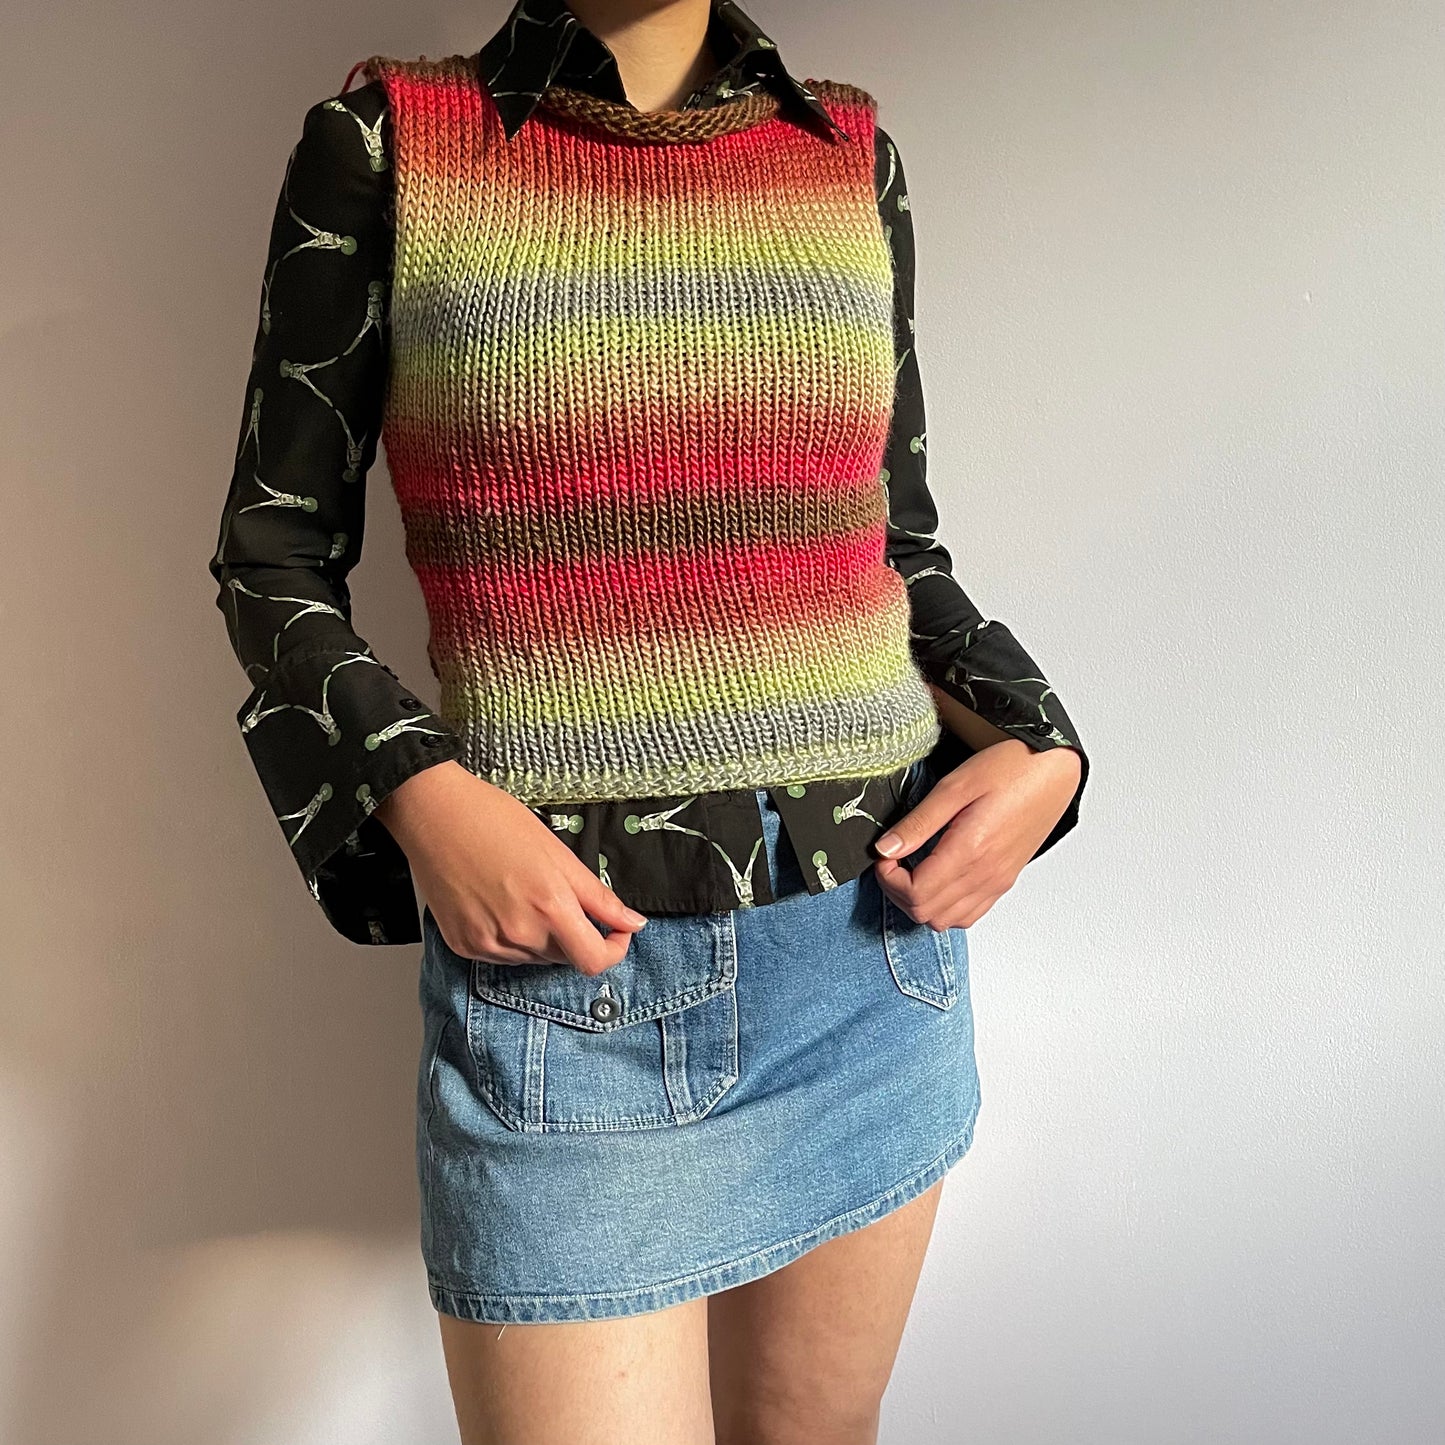 The Fireburst Vest - handmade knitted sweater vest